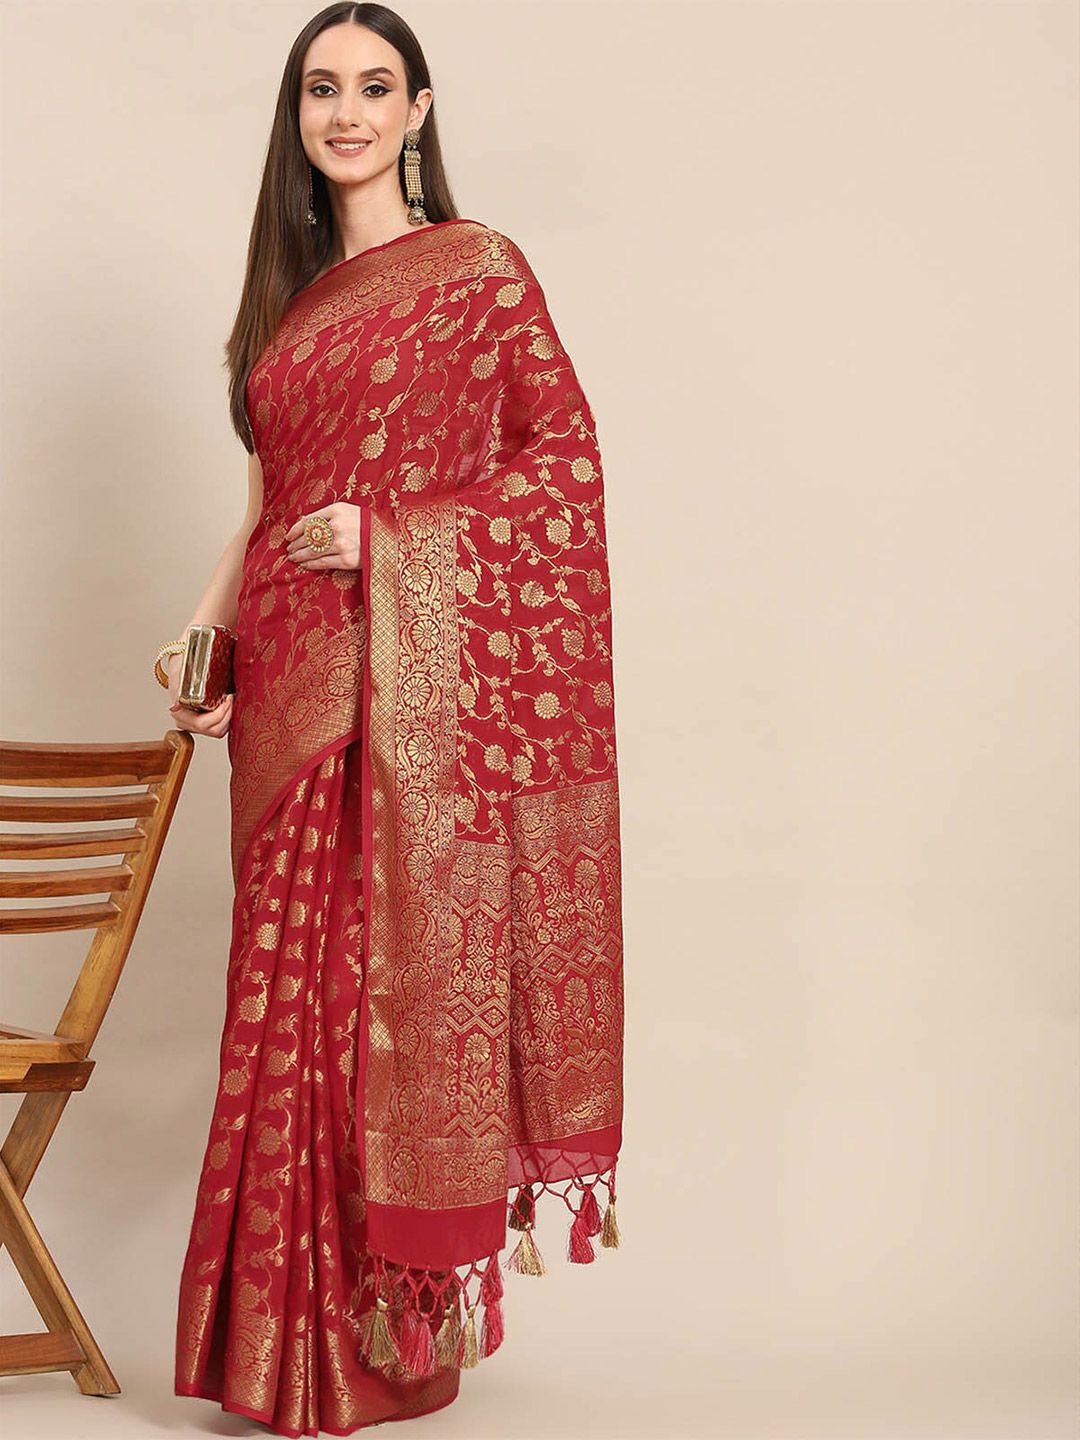 ODETTE Red & Gold-Toned Woven Design Zari Saree Price in India